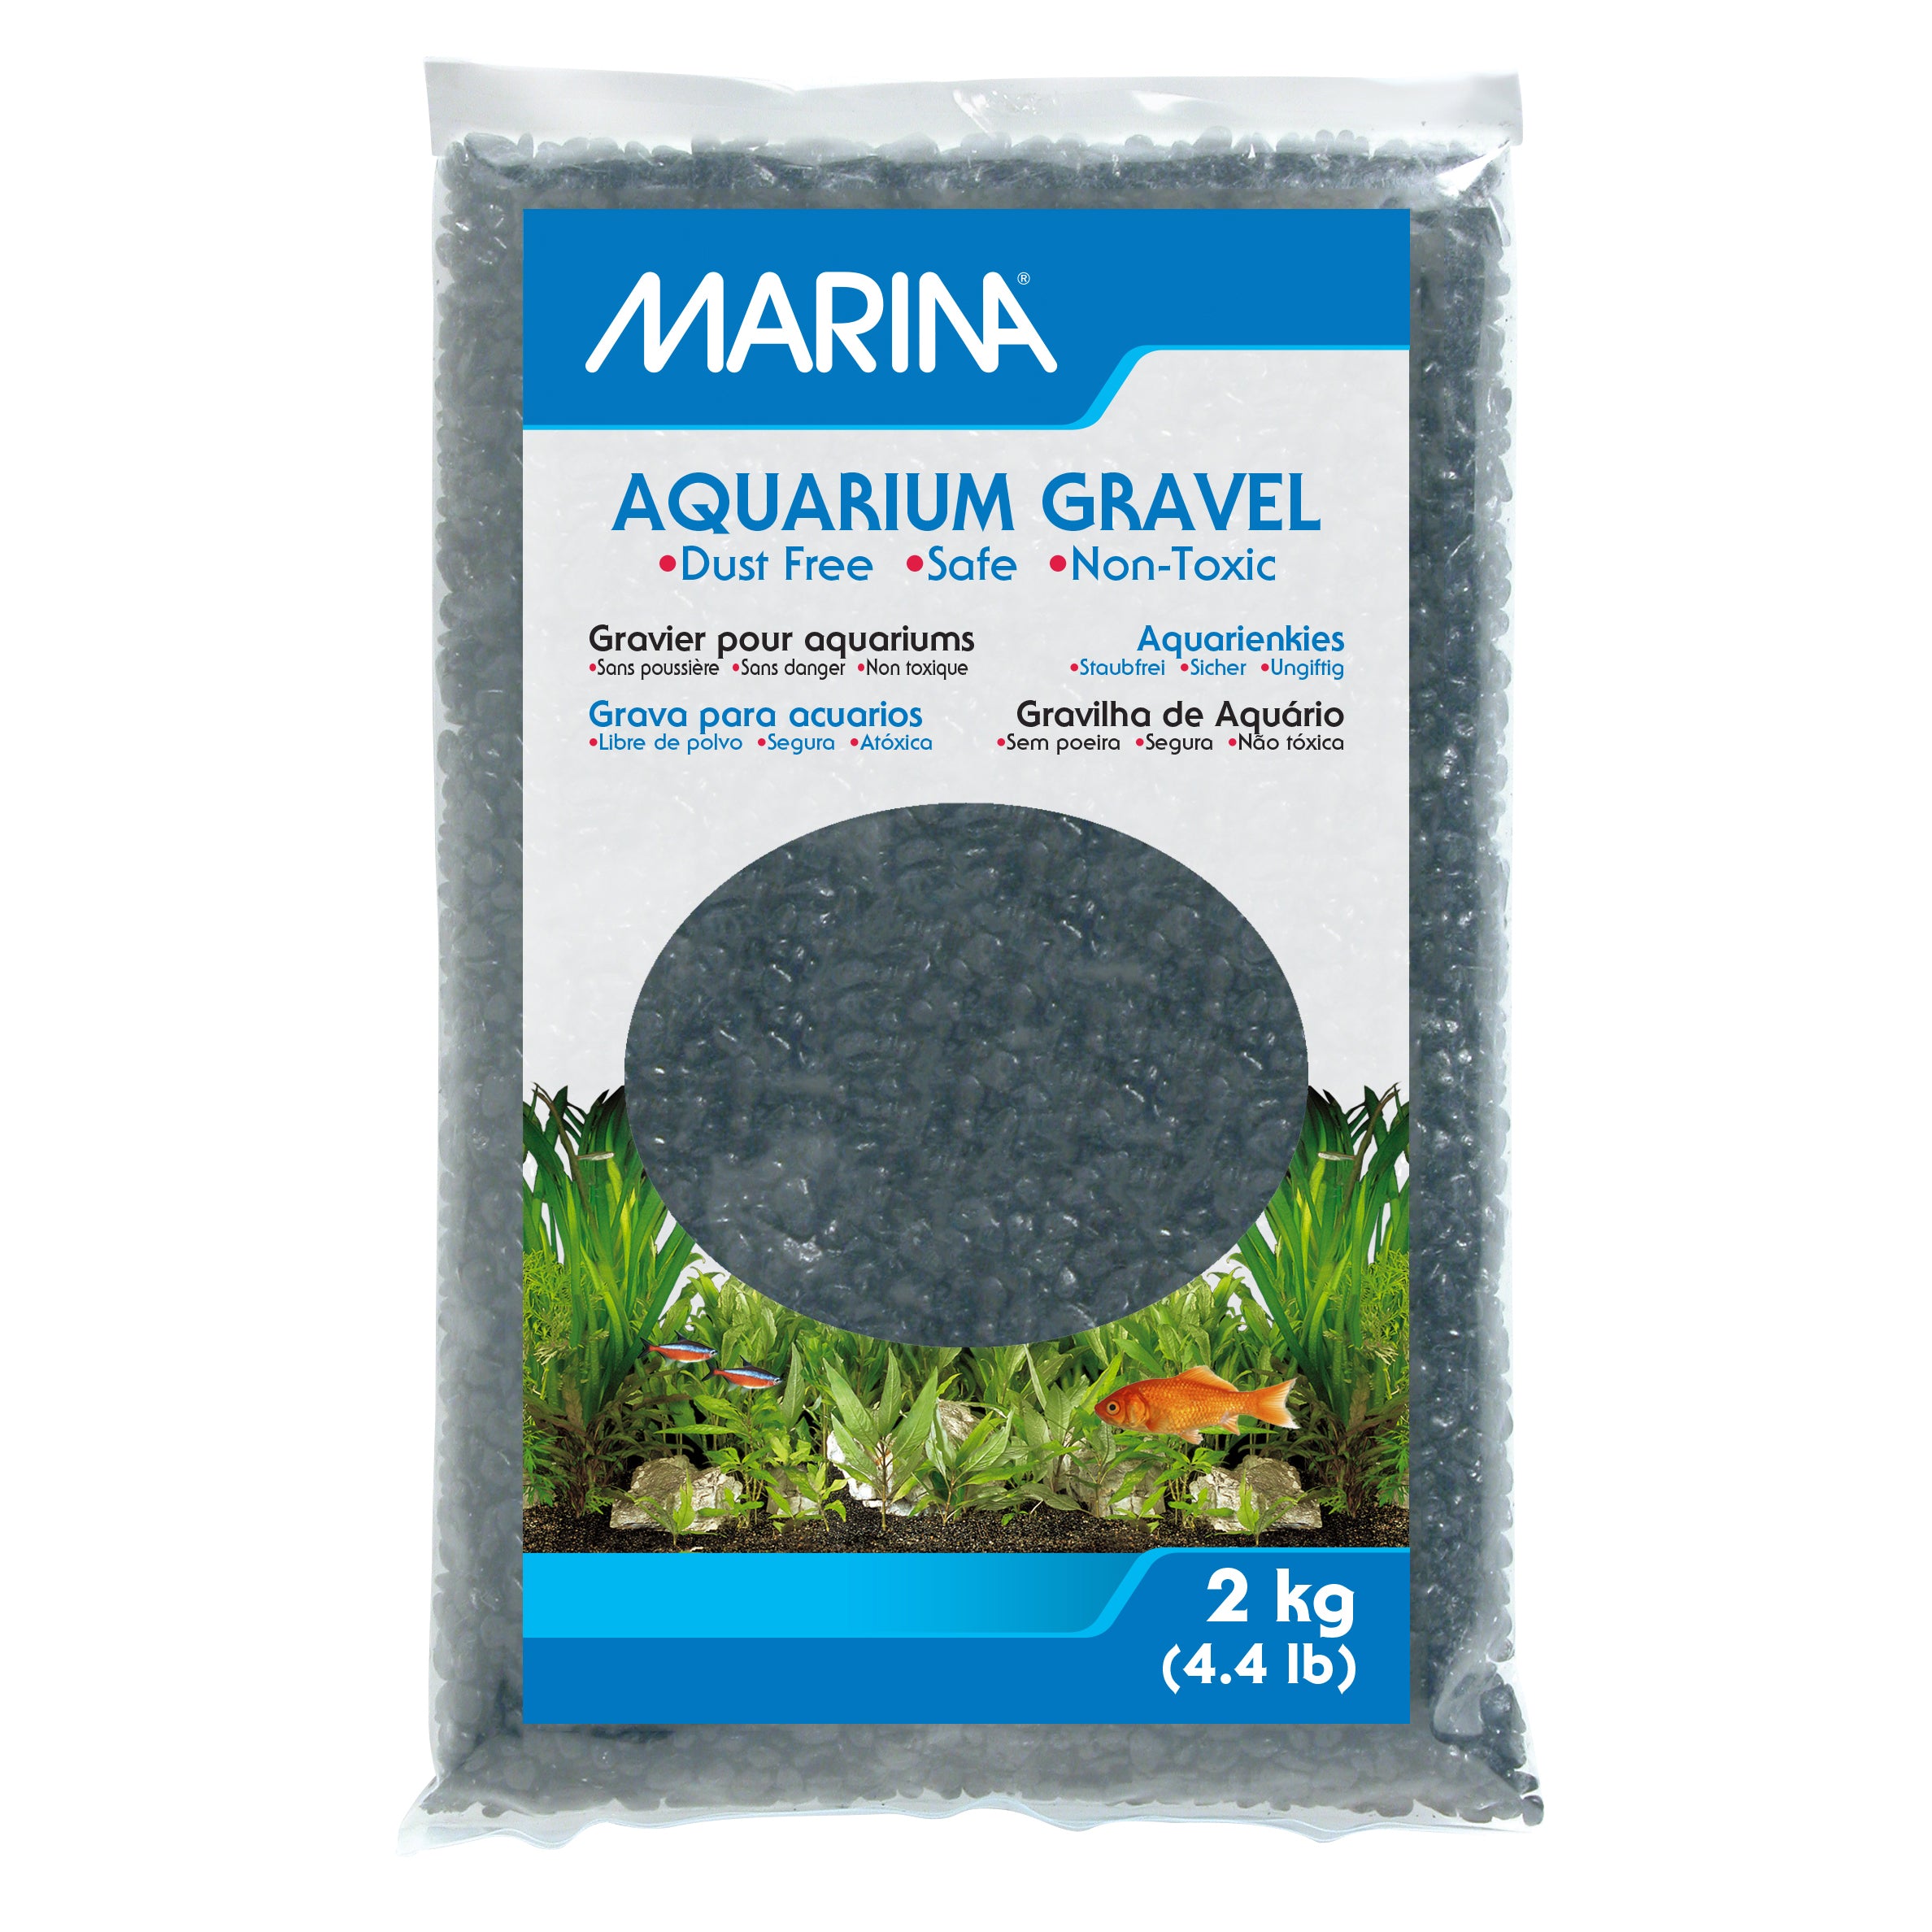 Marina Aquarium Gravel Black 2kg